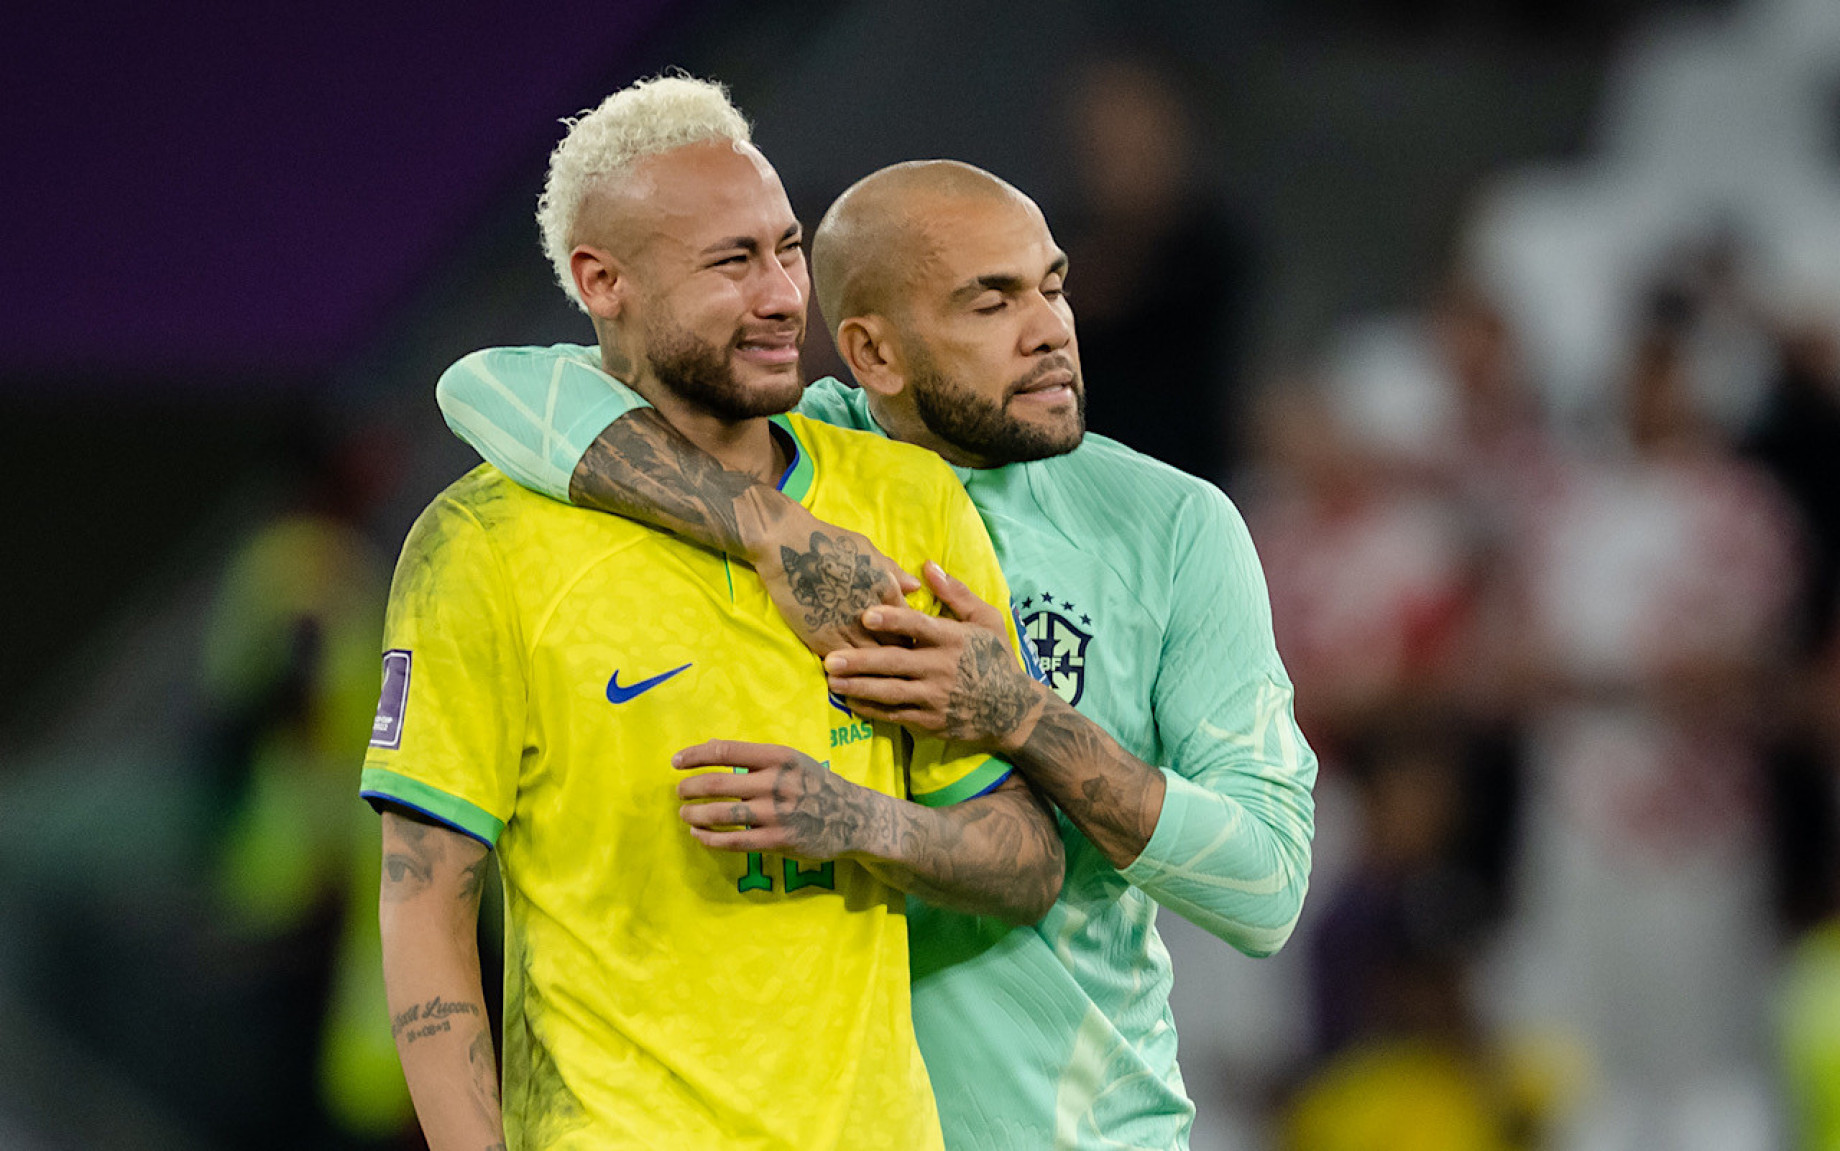 neymar-brasile-lacrime-getty-gpo.jpg